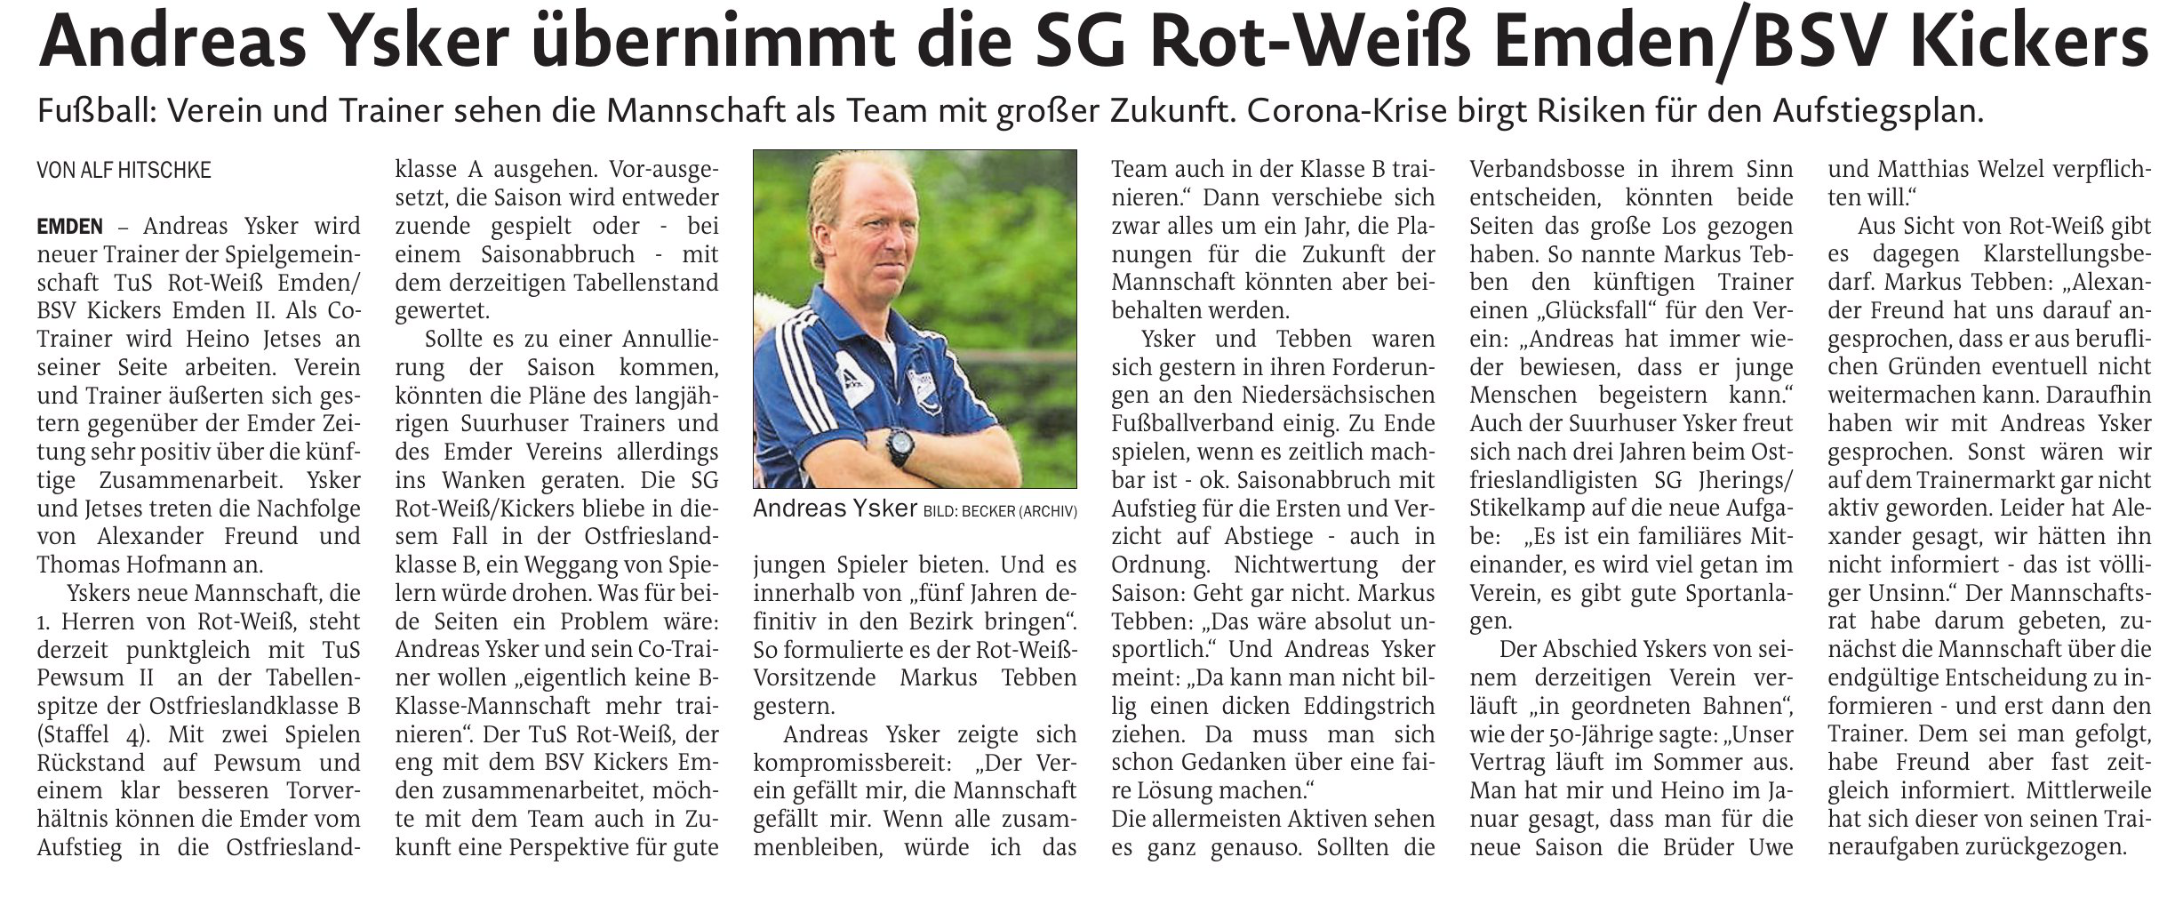 Andreas Ysker übernimmt die SG Rot-Weiß / Kickers Emden. Verein und Trainer sehen als Team mit grßer Zukunft.